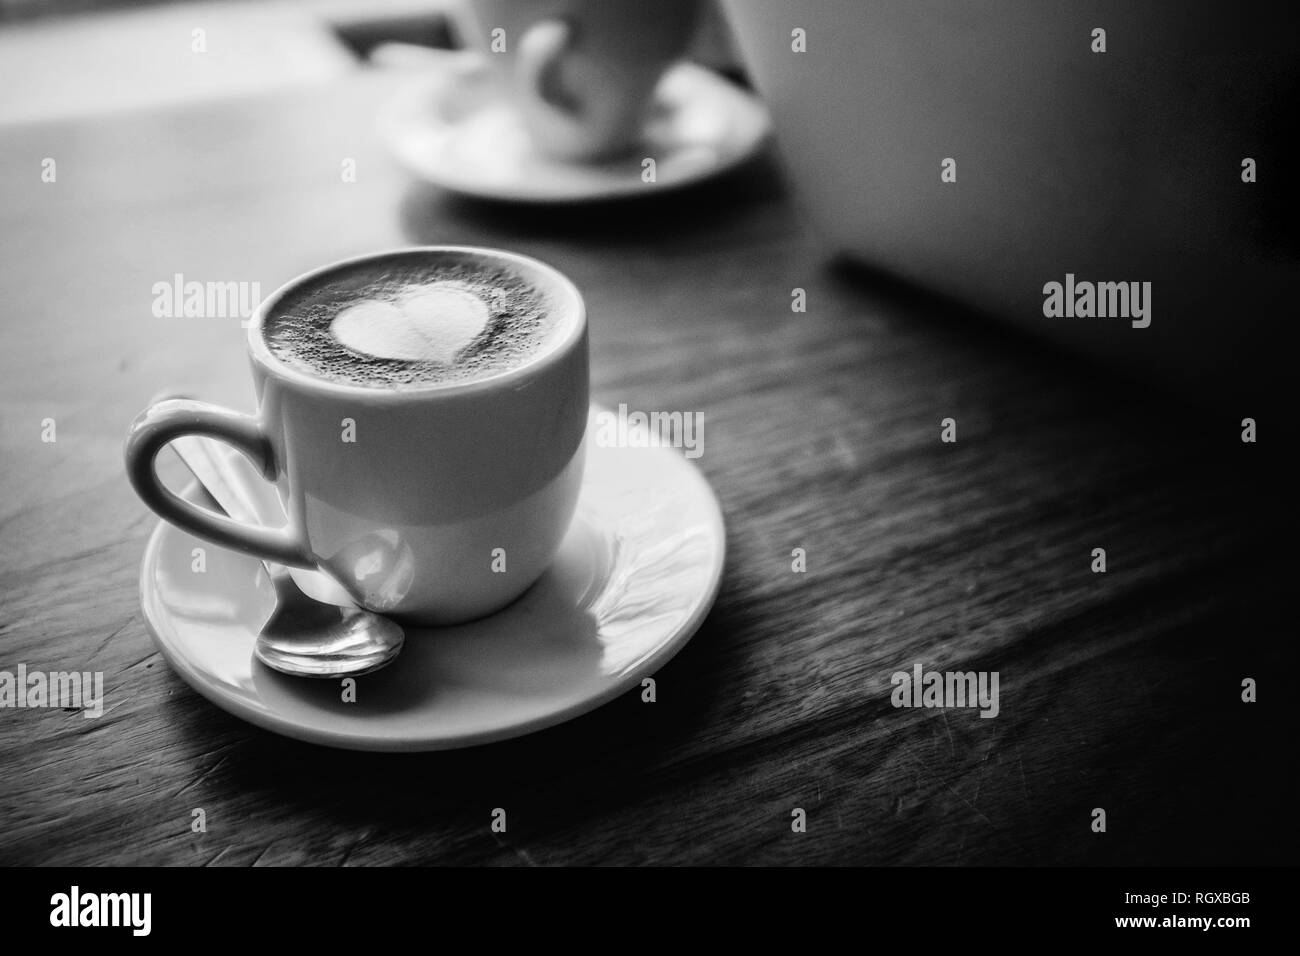 Eine weiße Tasse und Untertasse, silbernen Löffel, mit Kaffee und ein weißes Herz Form latte Schaum Kunst oben gefüllt. Sitzen auf einem hölzernen Tisch, neben einem Laptop. Stockfoto